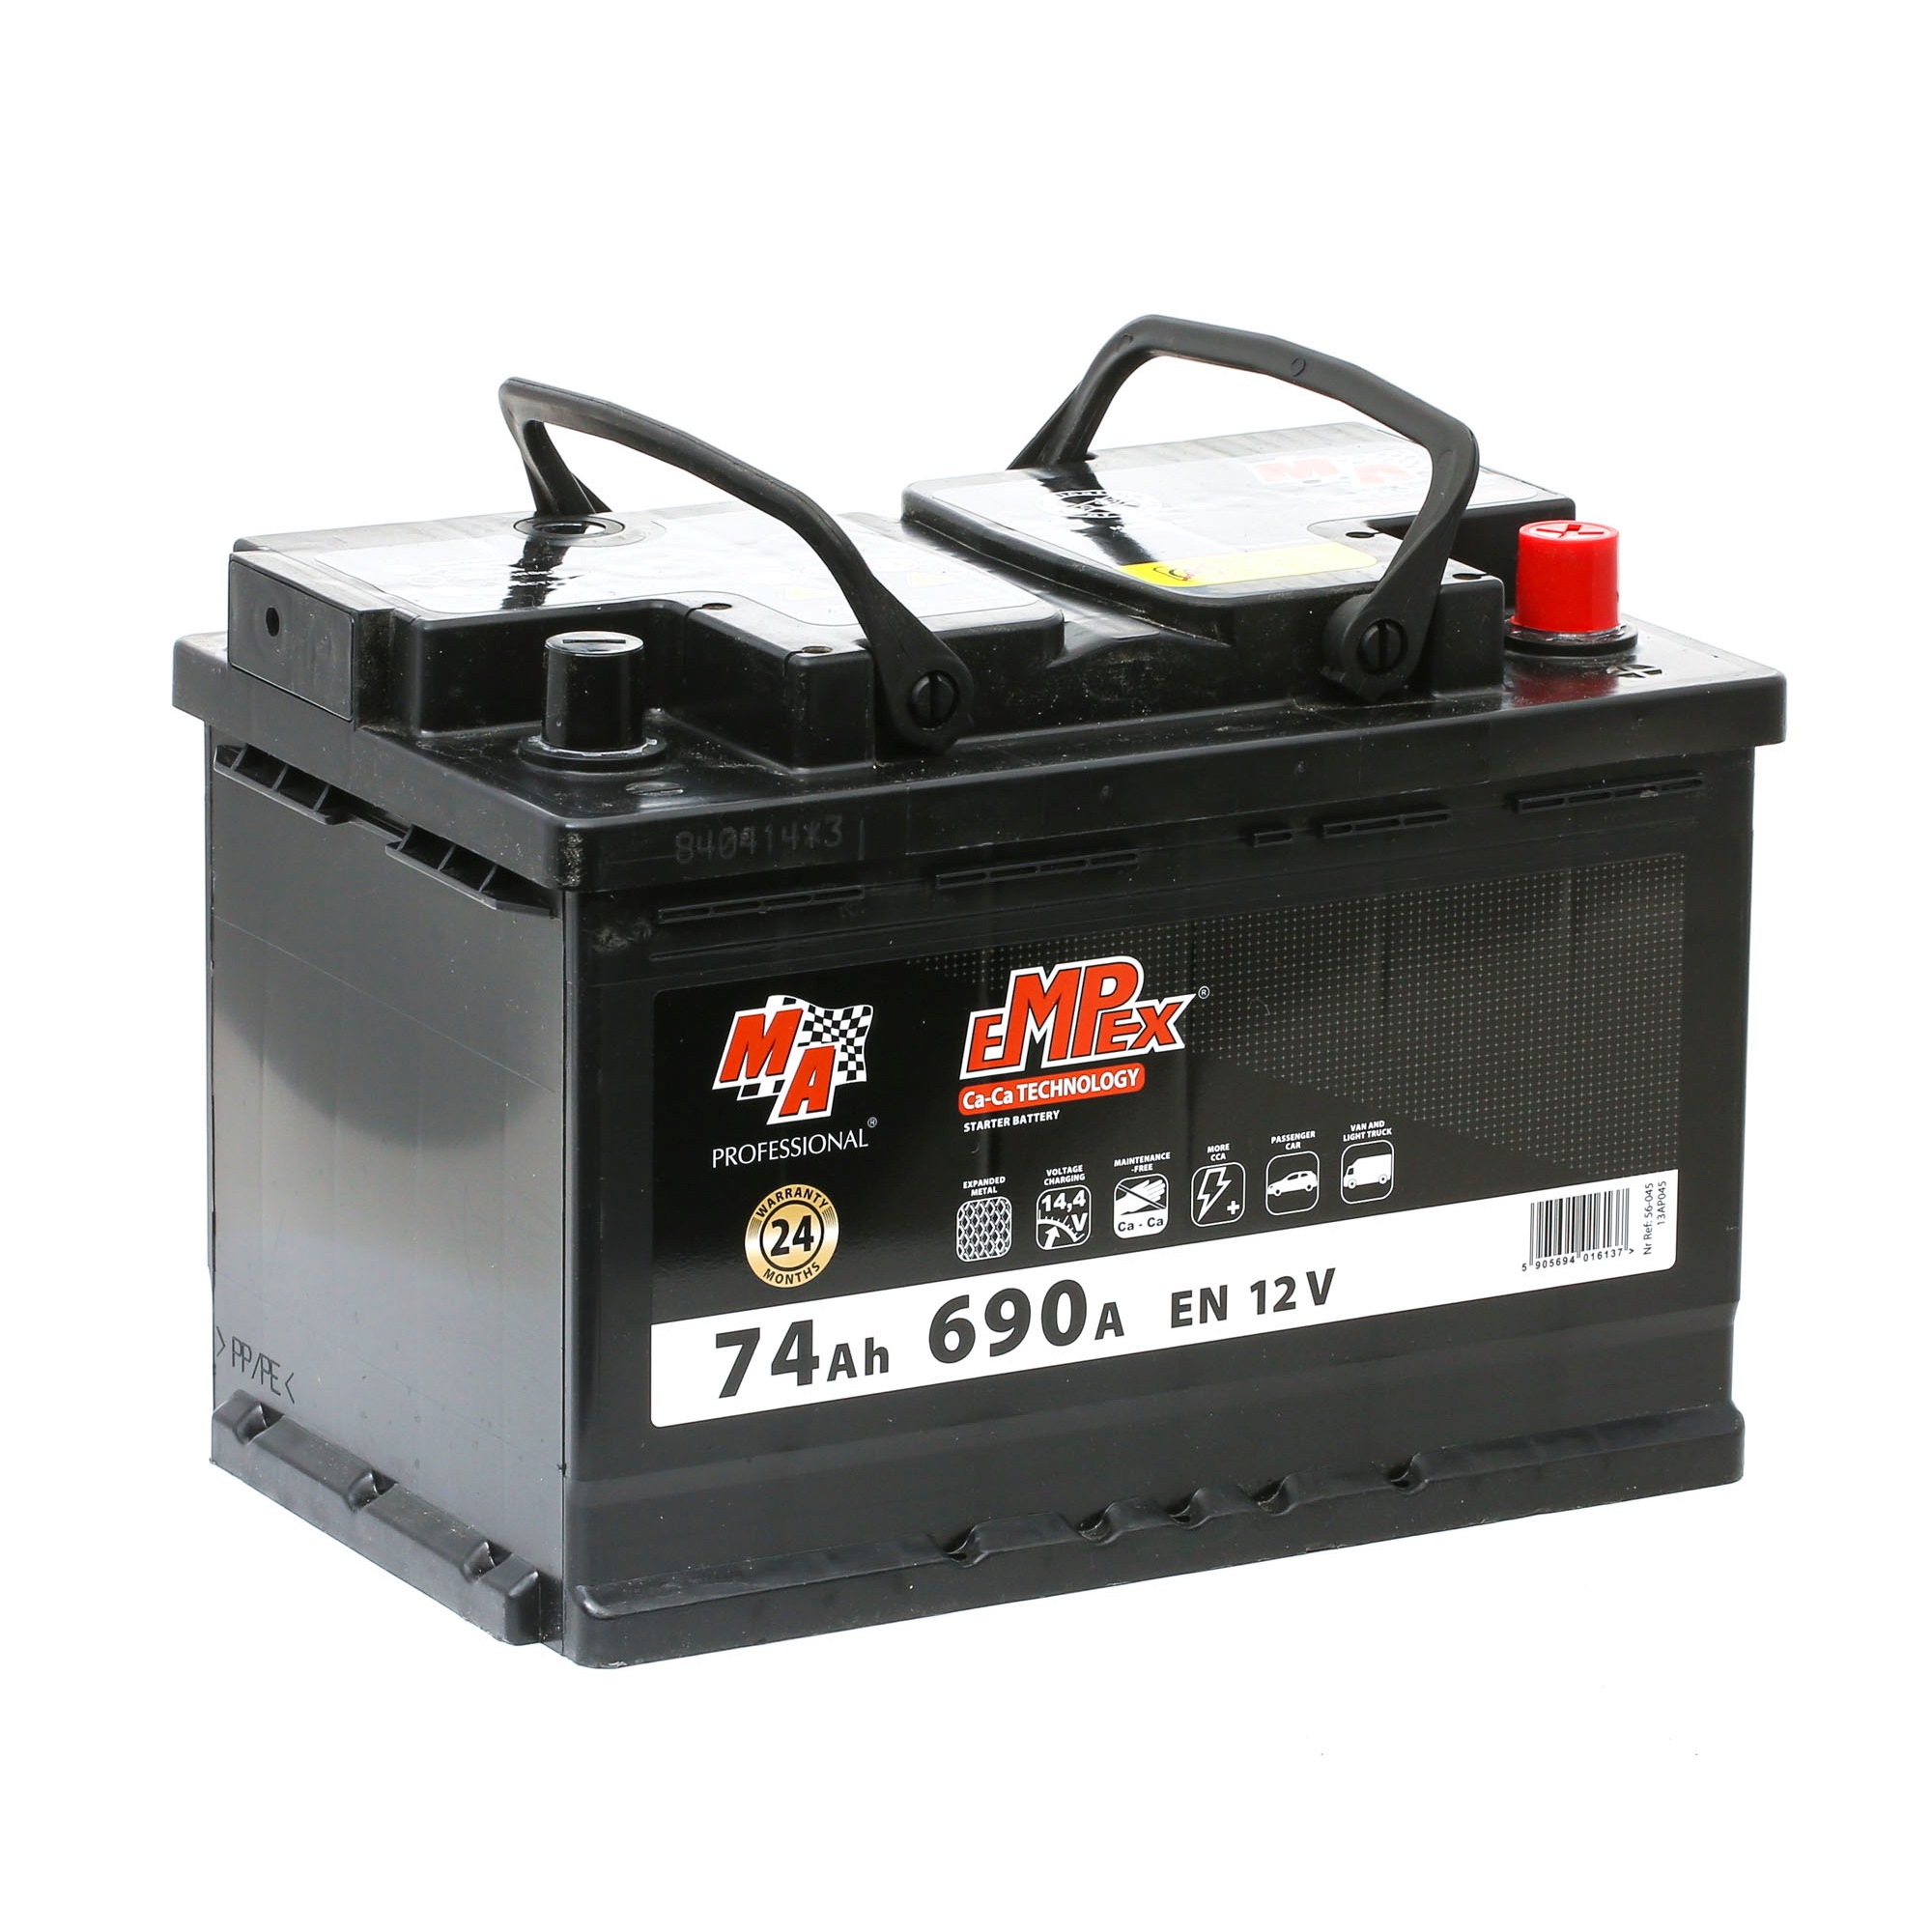 56-045 EMPEX Batería de arranque - comprar online